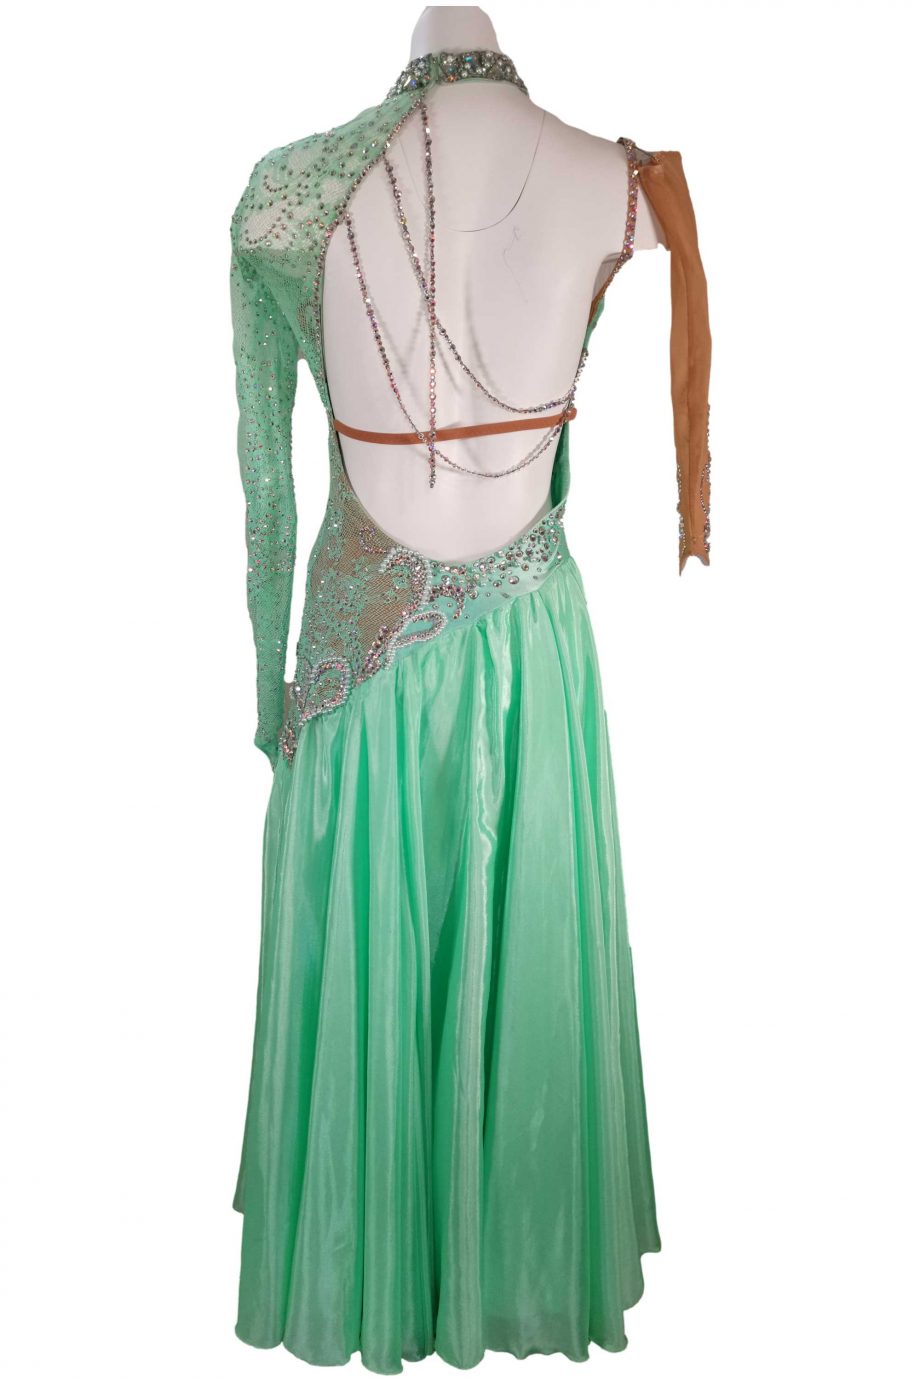 Cashay designer Latin dress | Luciana Back